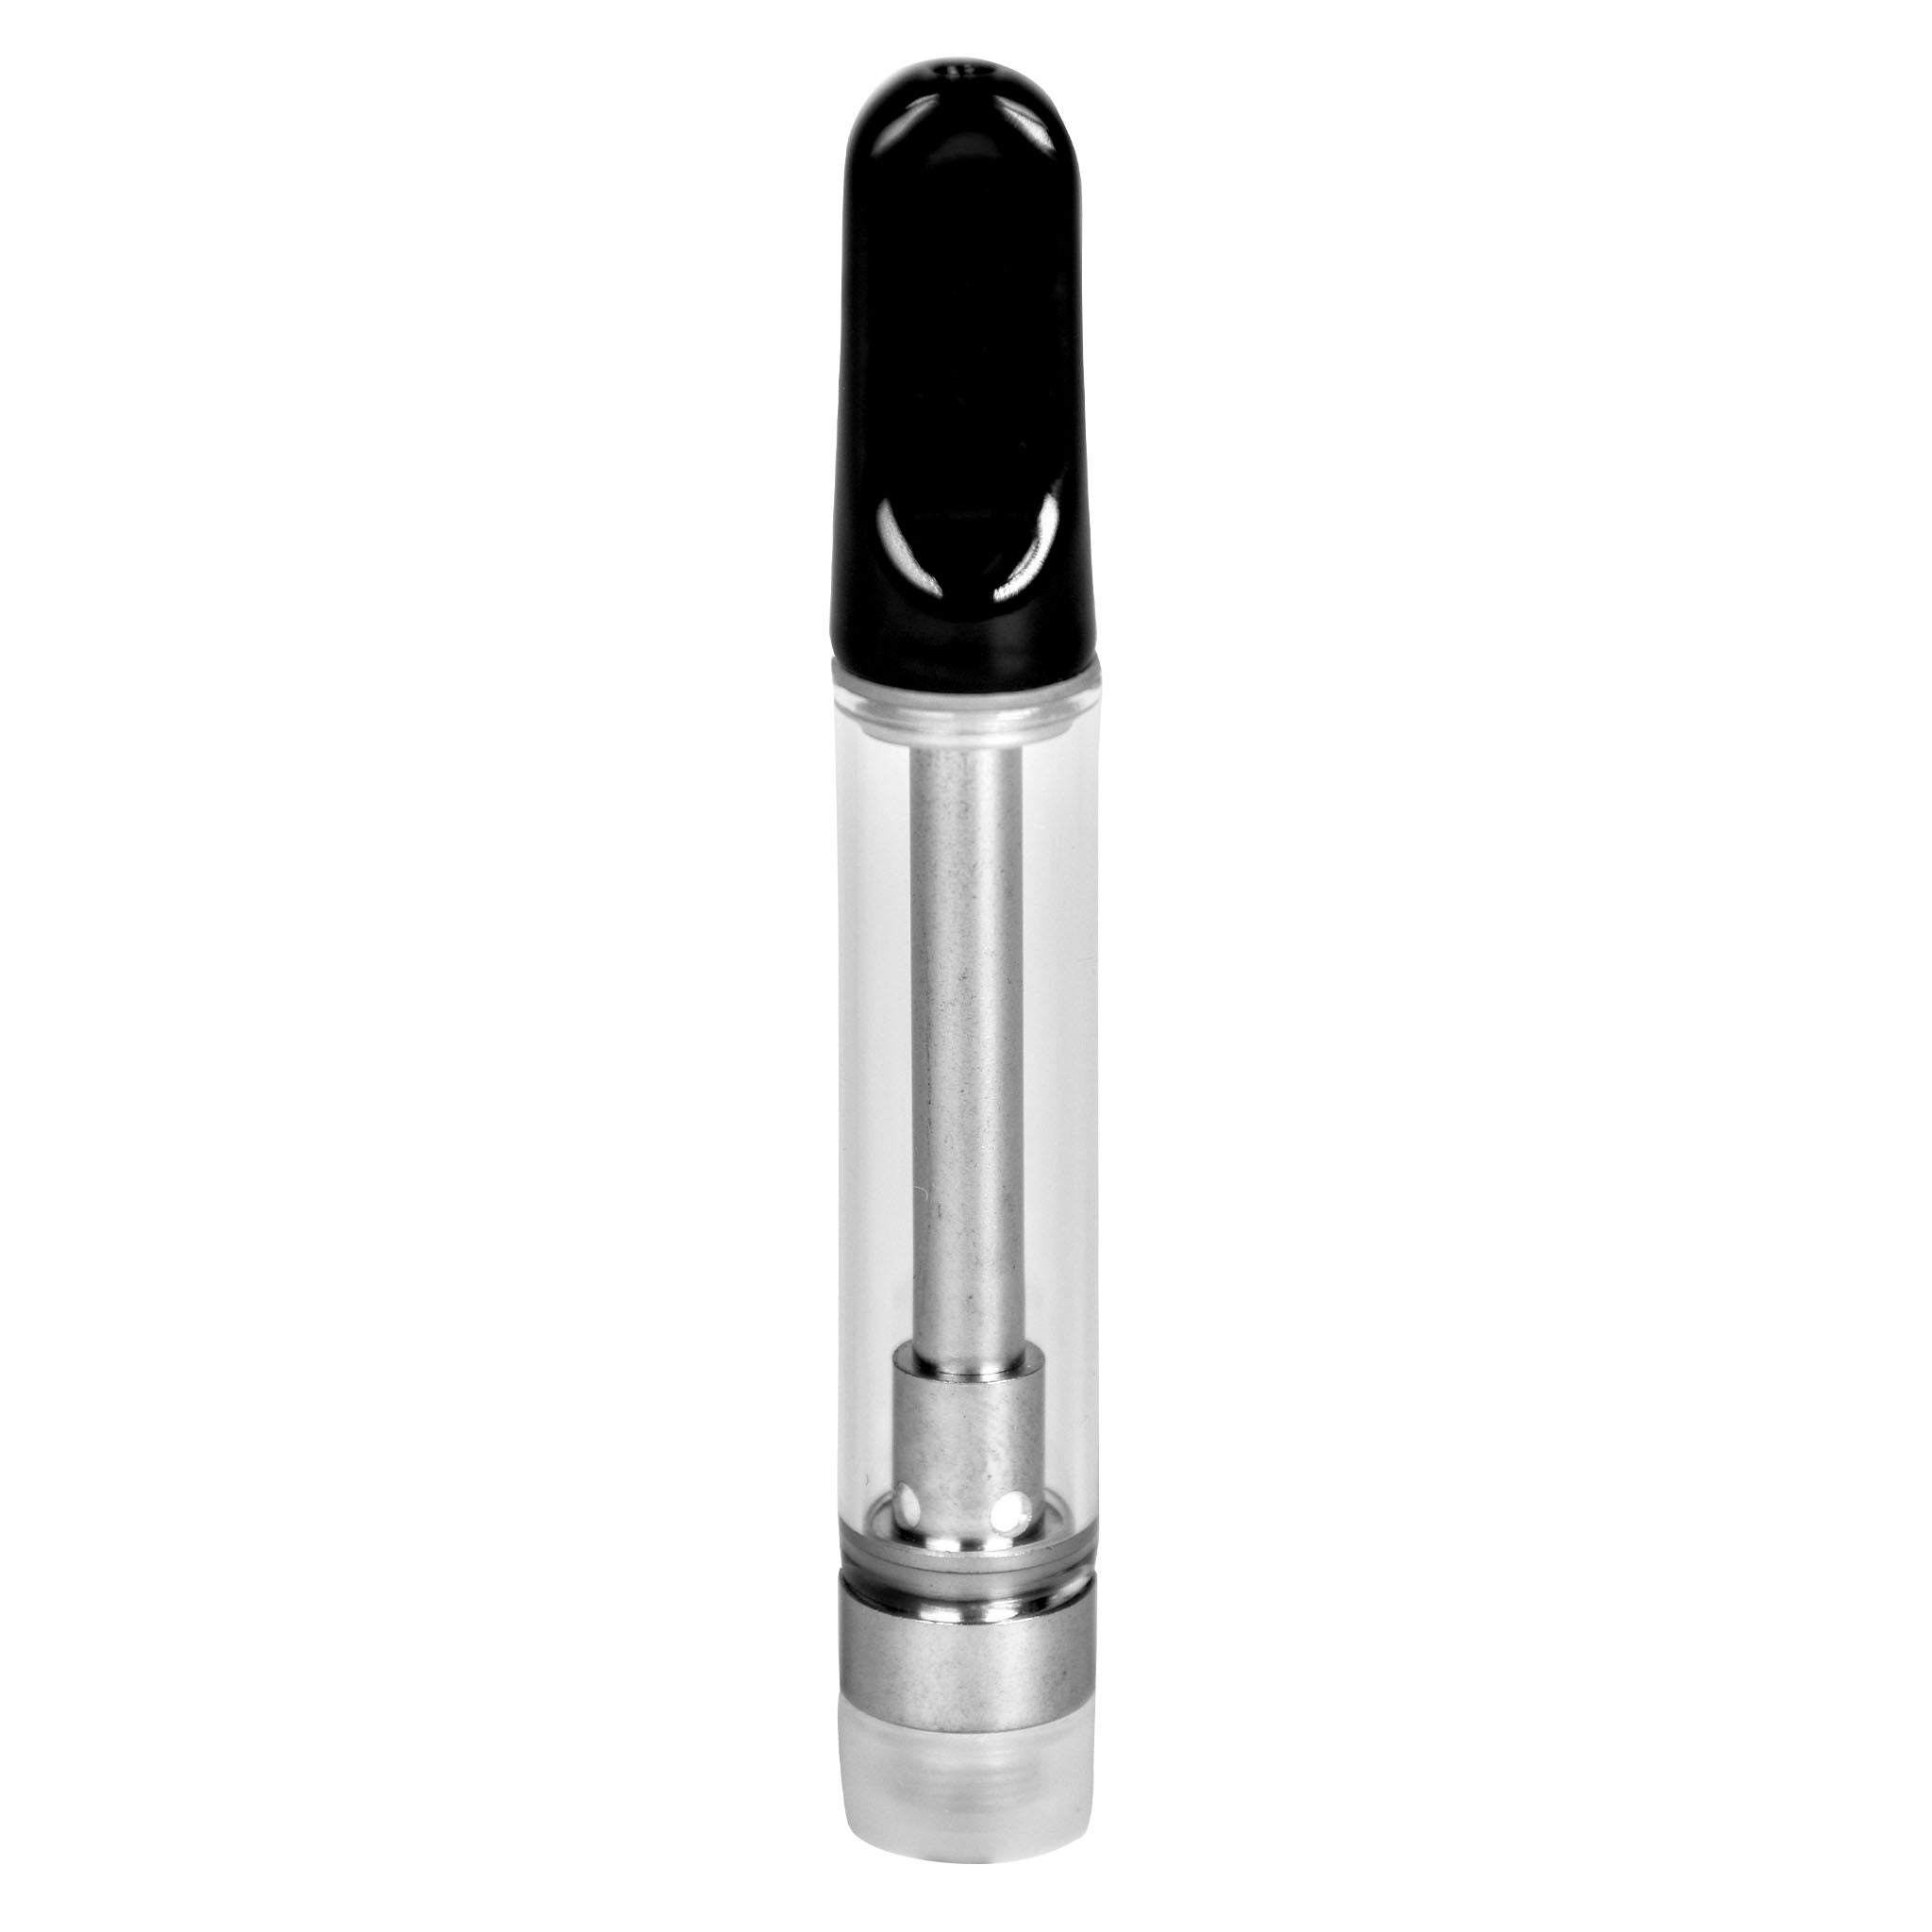 1.5mL 510 Screw Top Black Tip Vape Cartridge-Vape Cartridges-Vape Pens Wholesale